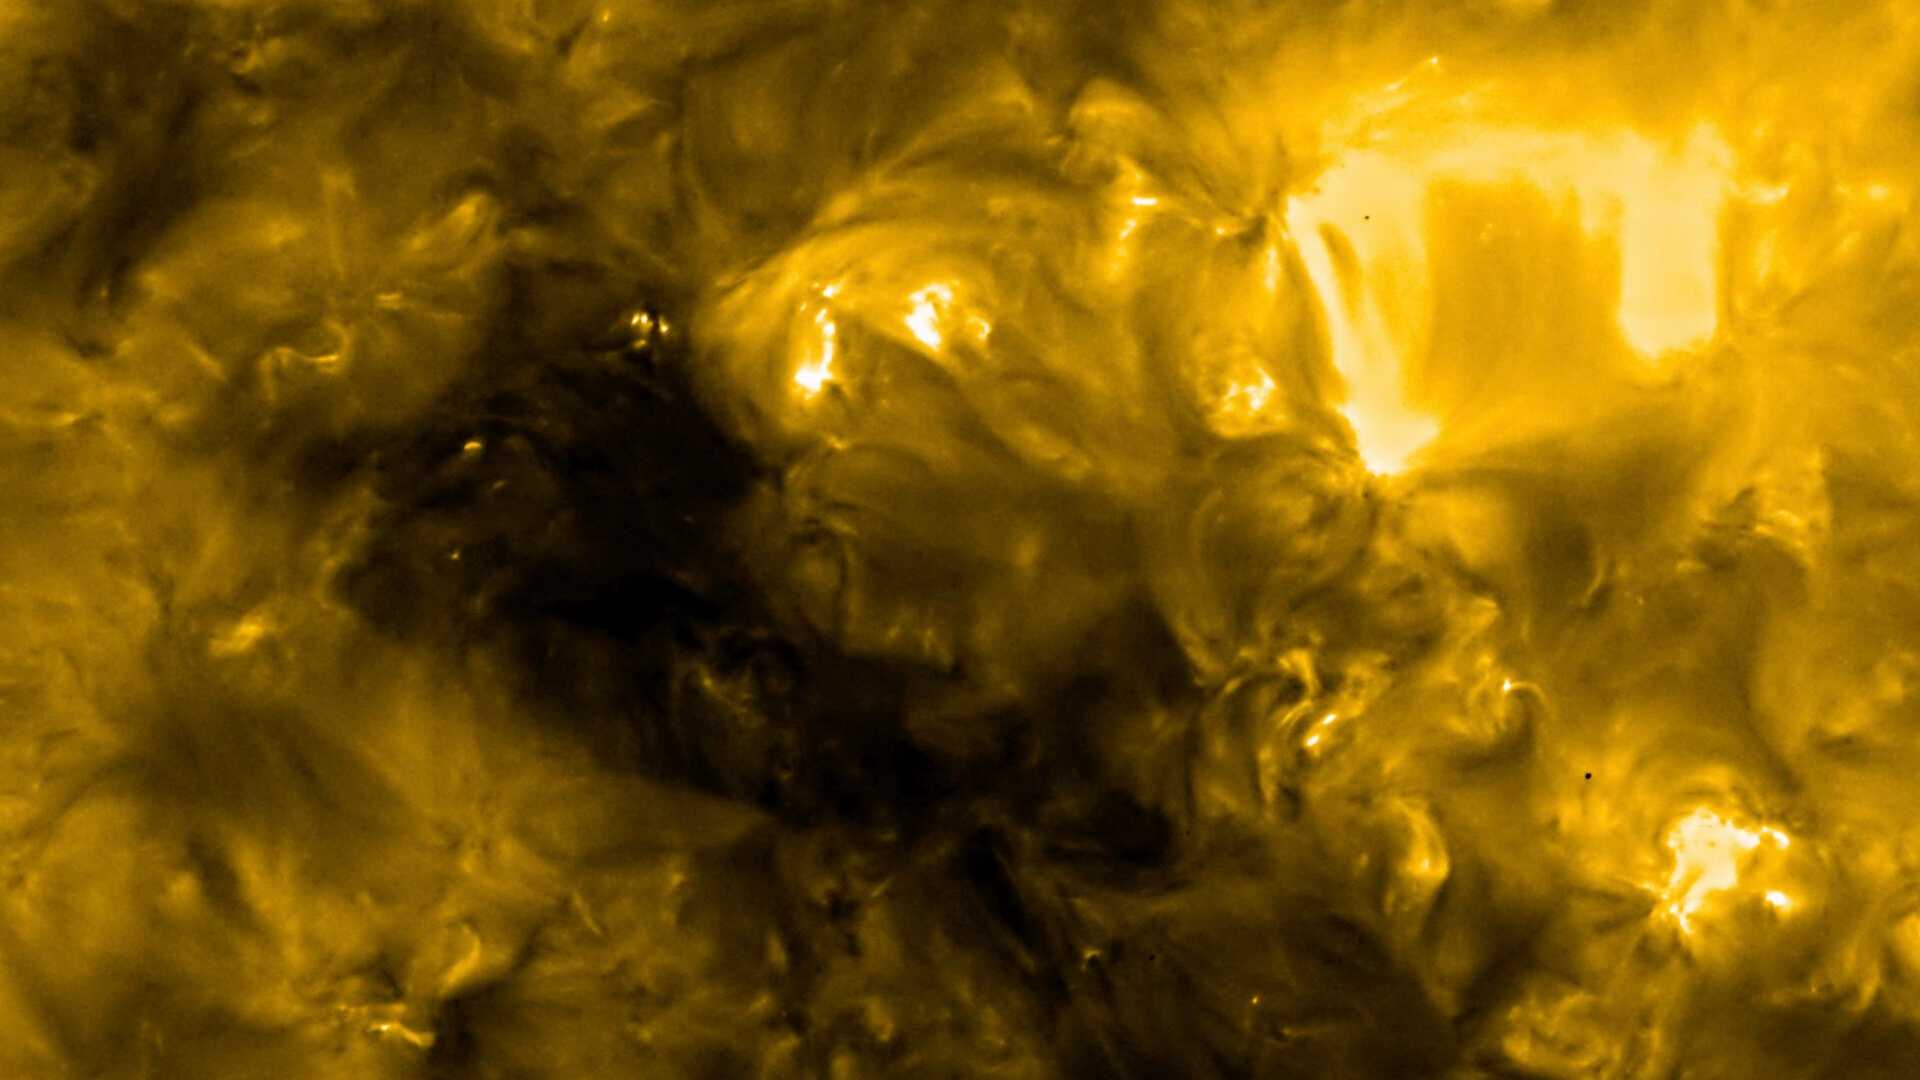 Esta é uma das primeiras imagens de alta resolução feitas pela sonda Solar Orbiter da ESA, tirada com o telescópio HRIEUV. A foto revela a atmosfera superior do Sol, a coroa, com uma temperatura de cerca de 1 milhão de graus. O Solar Orbiter é uma missão espacial de colaboração internacional entre a ESA e a Nasa